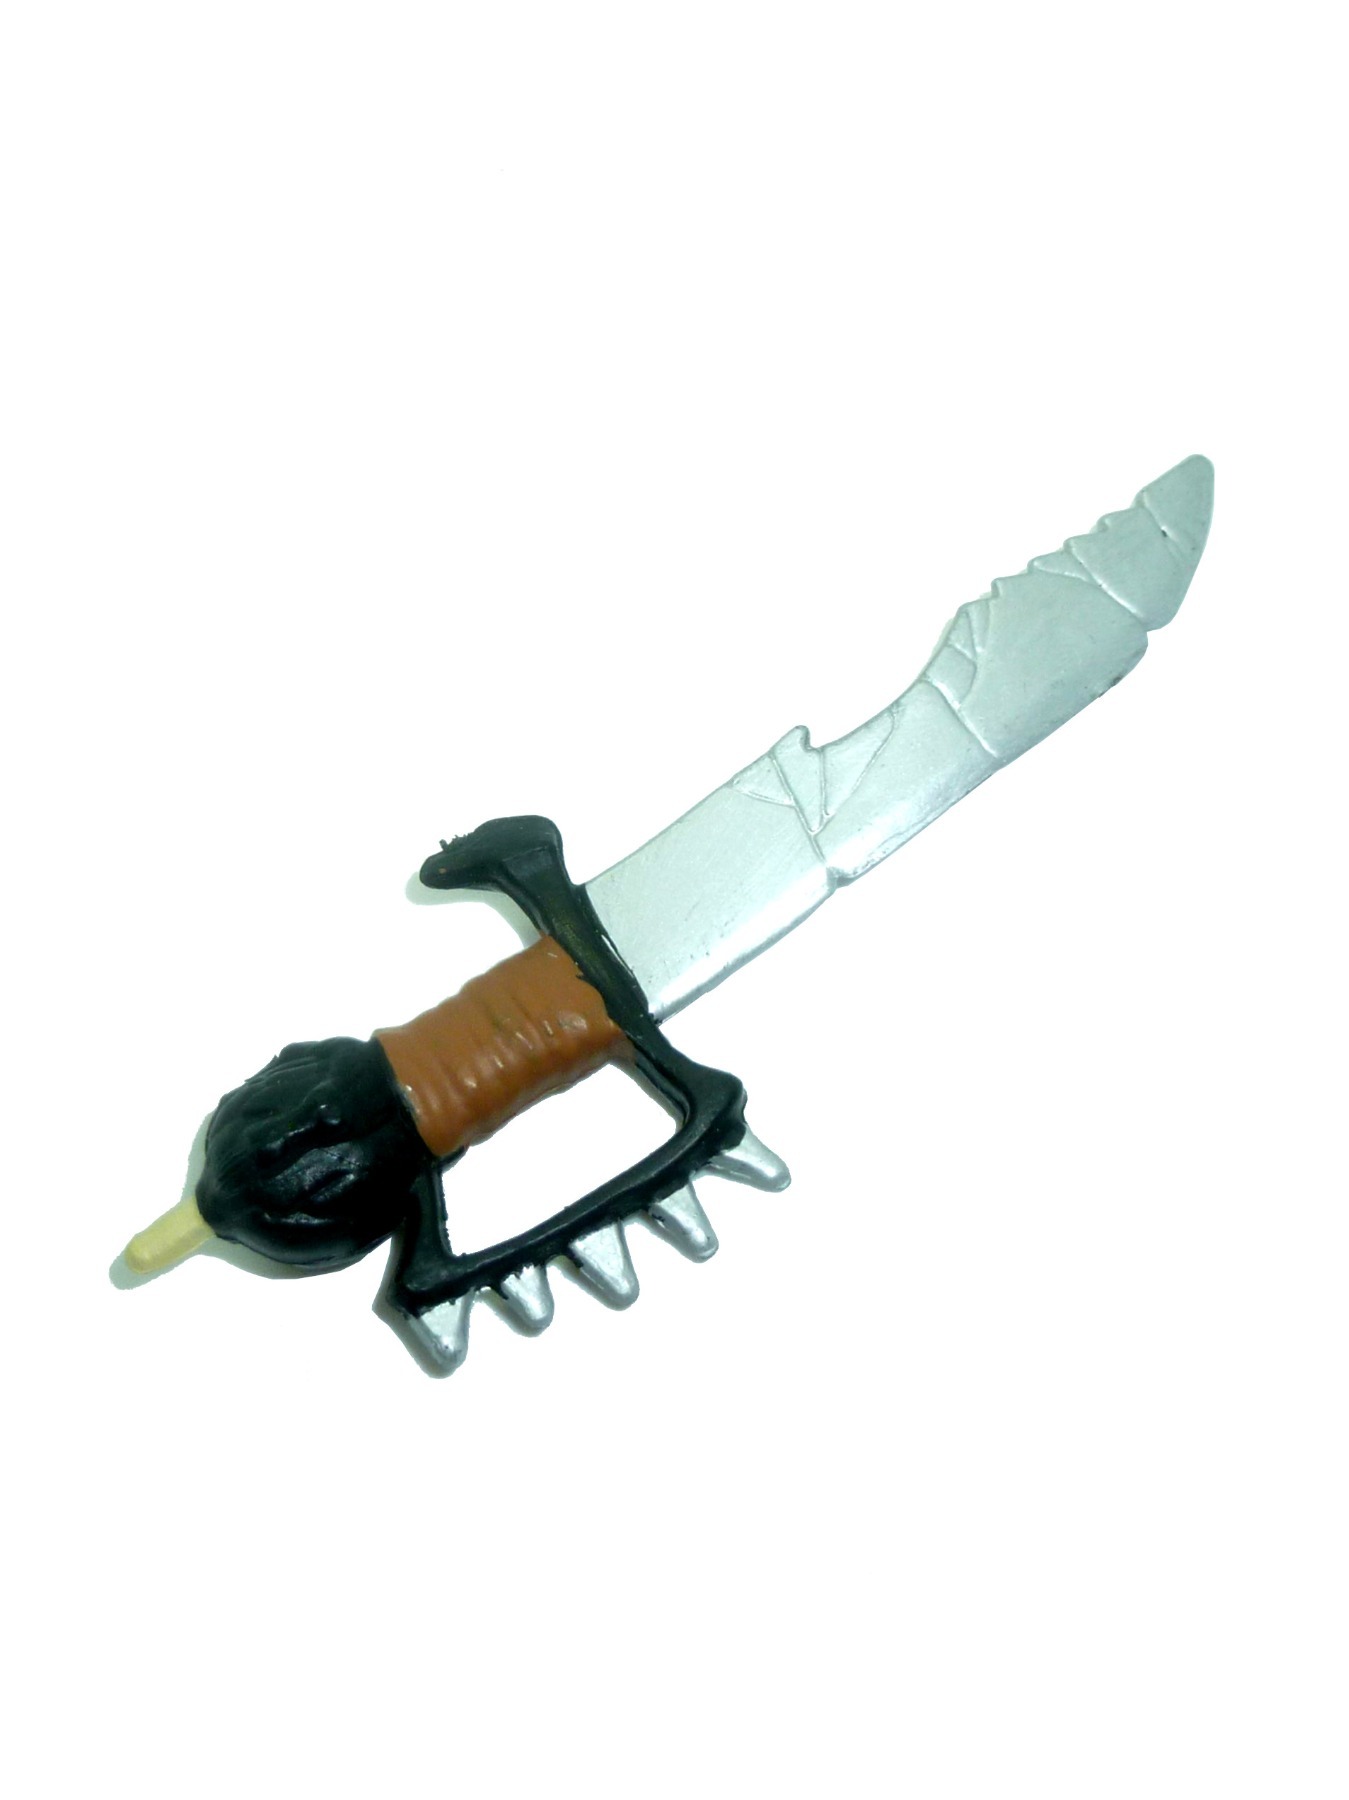 Vandalizer sword / knife